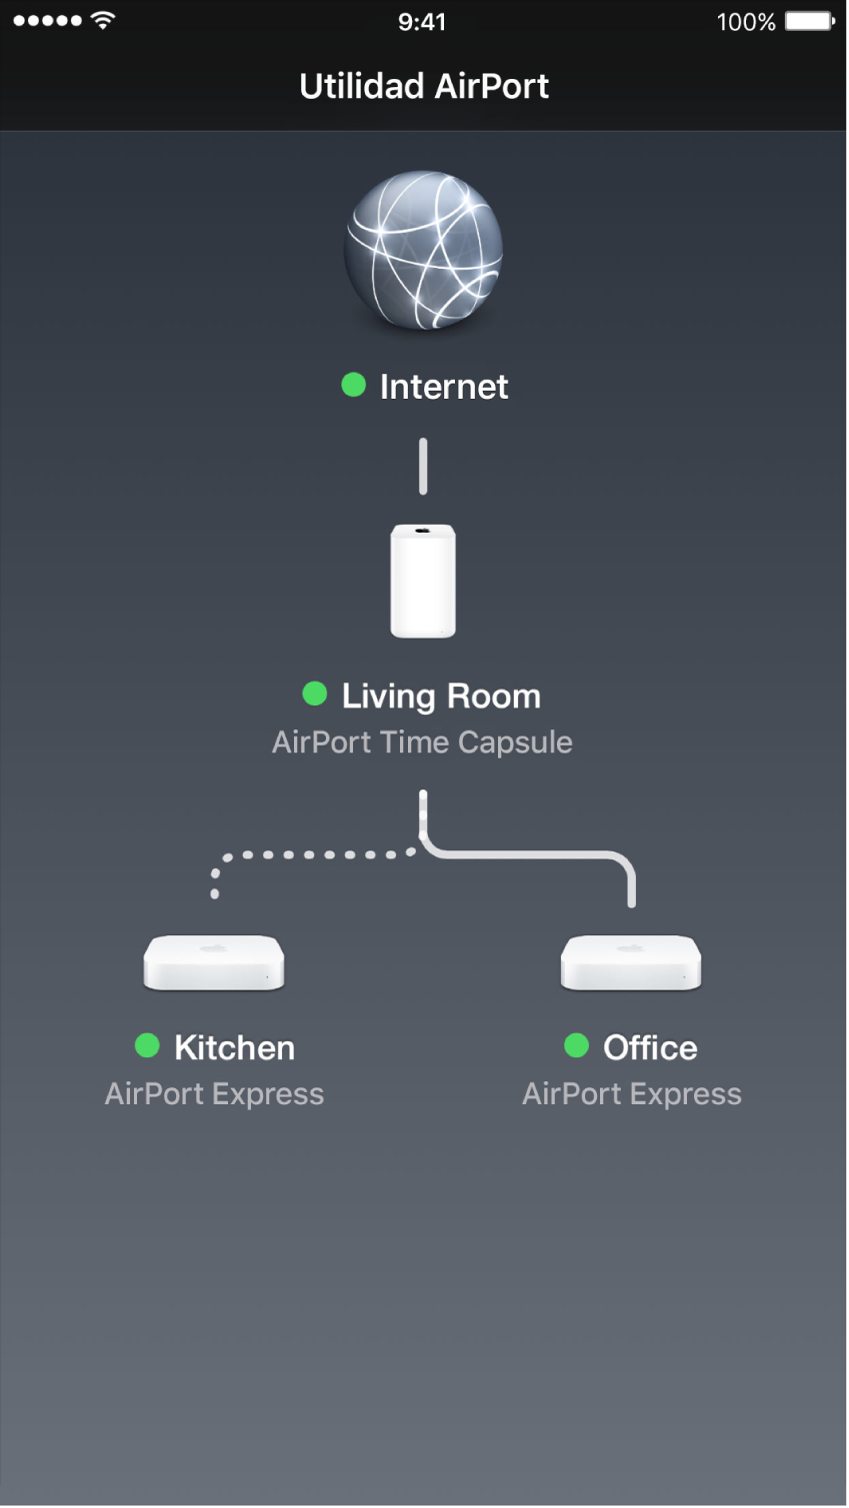 La información gráfica en Utilidad AirPort para iOS.